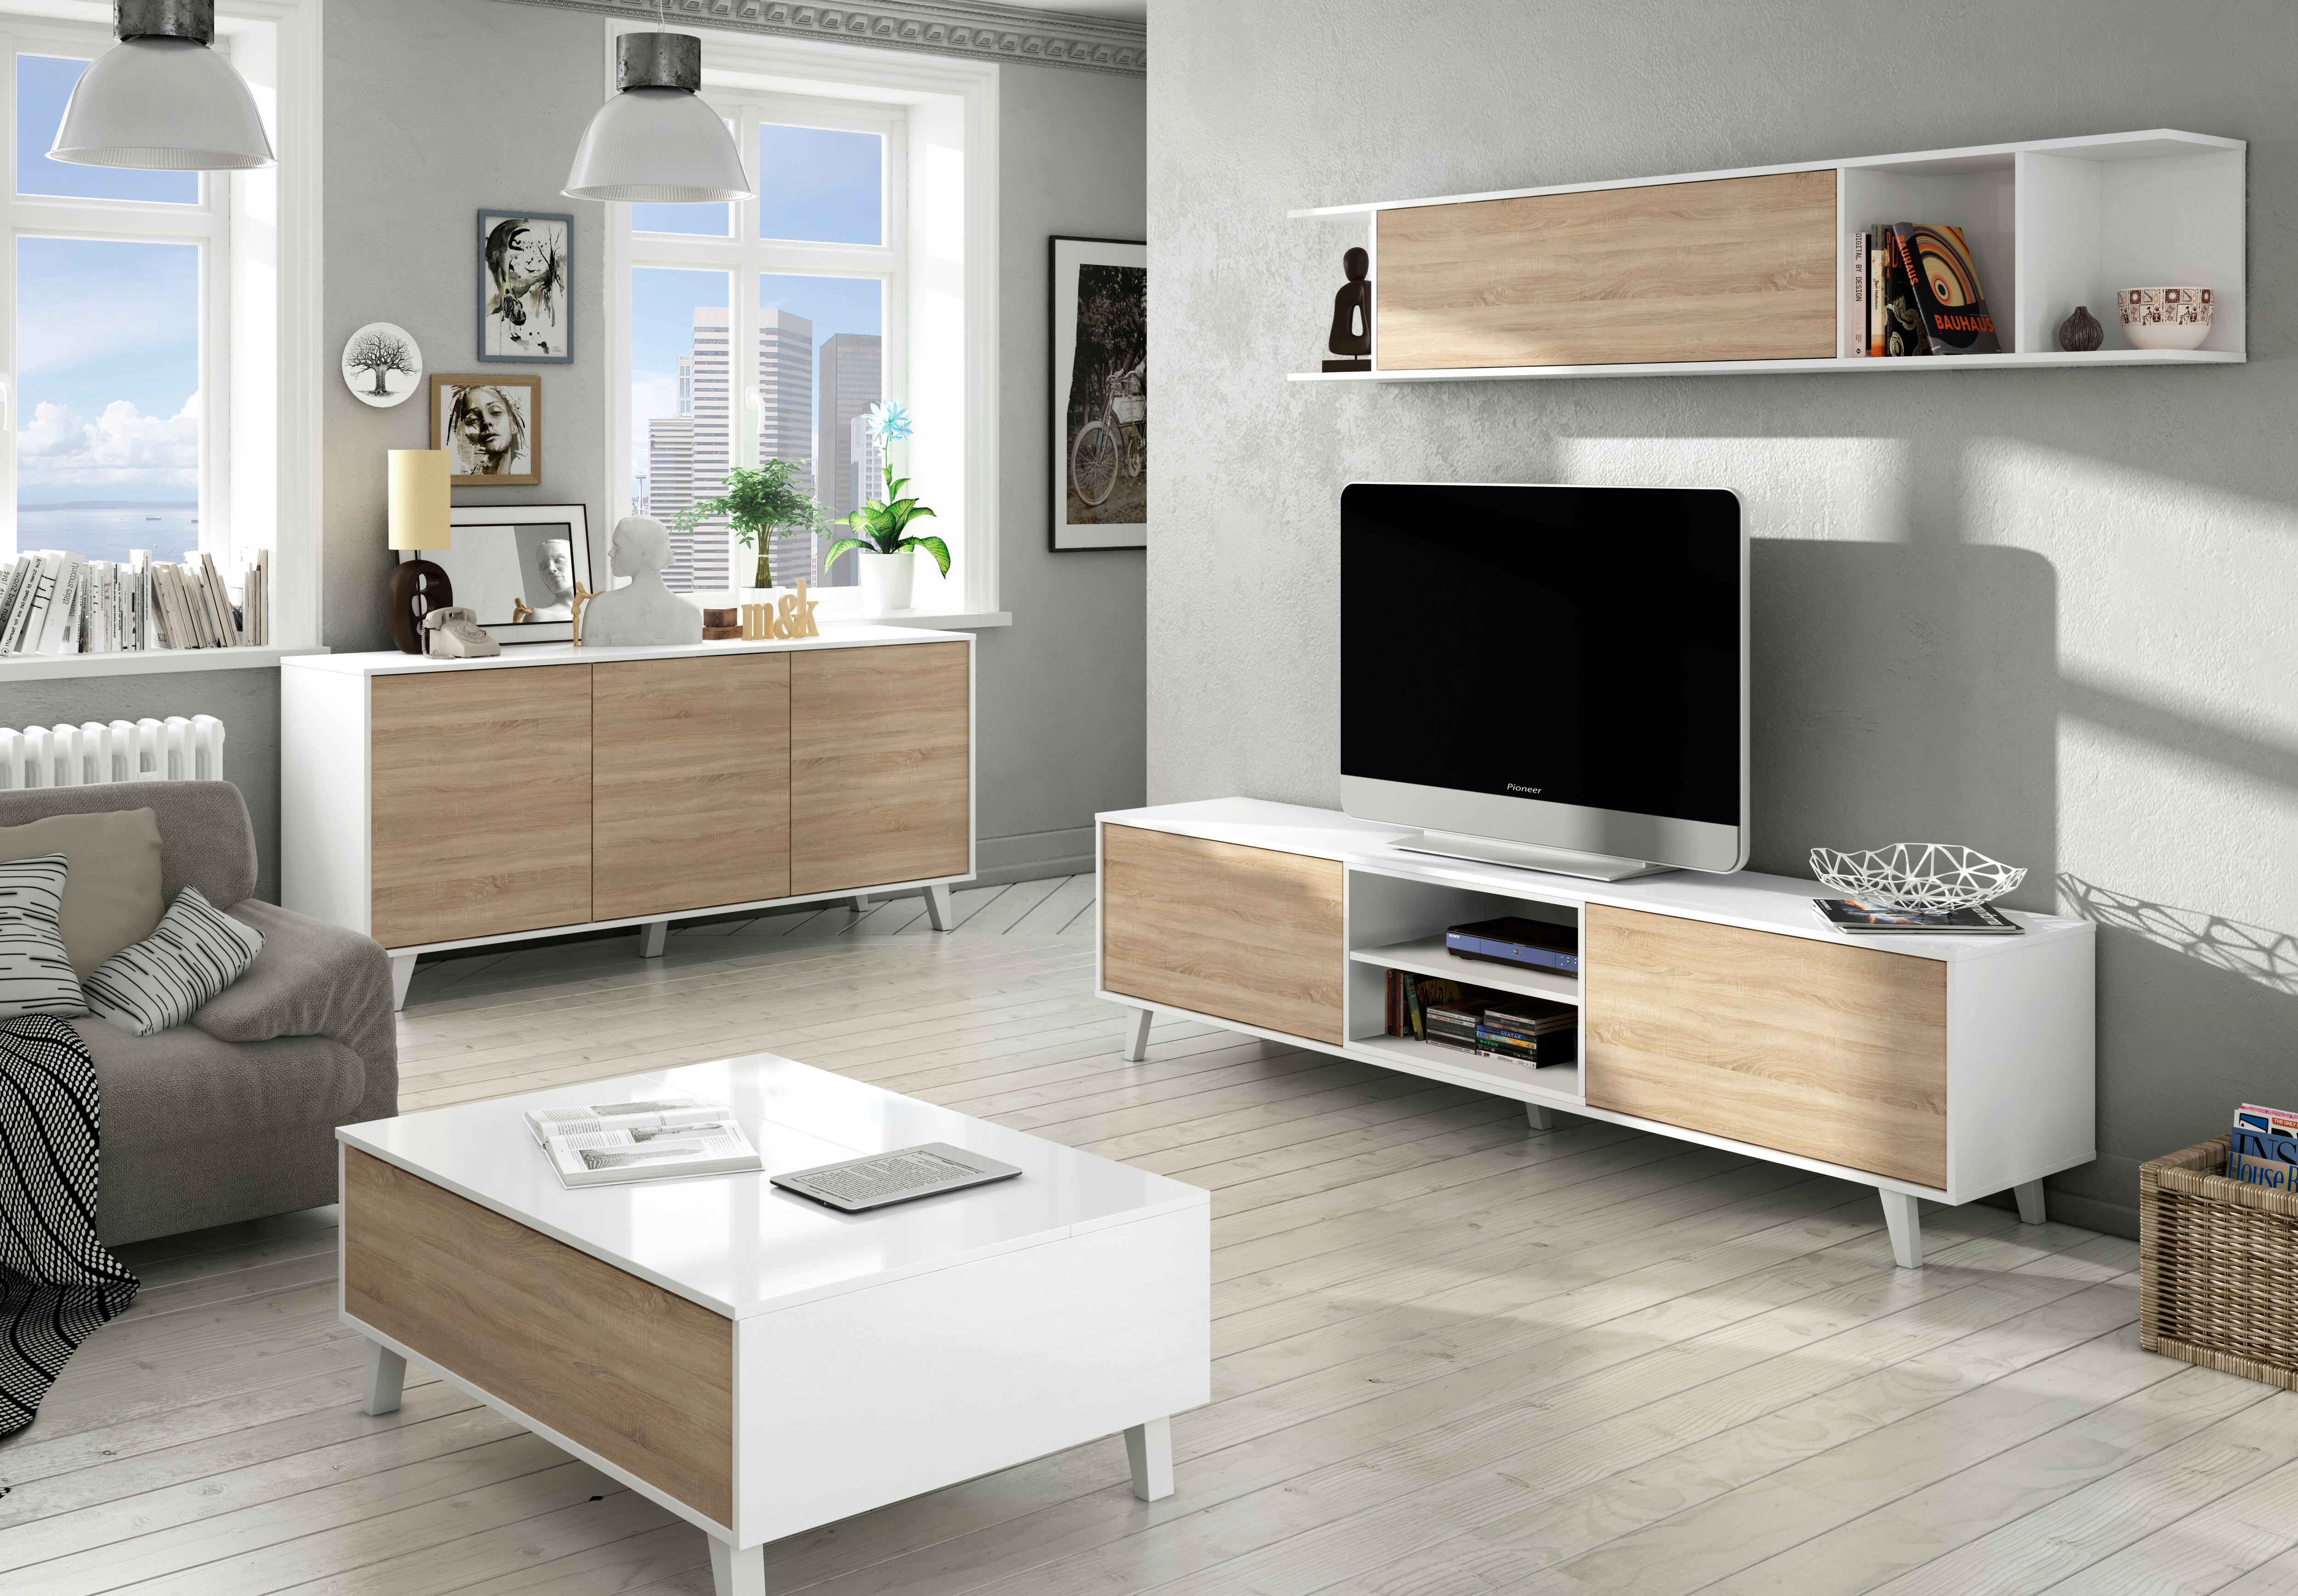 Conjuntos mueble salón (Mueble TV + muebles | Leroy